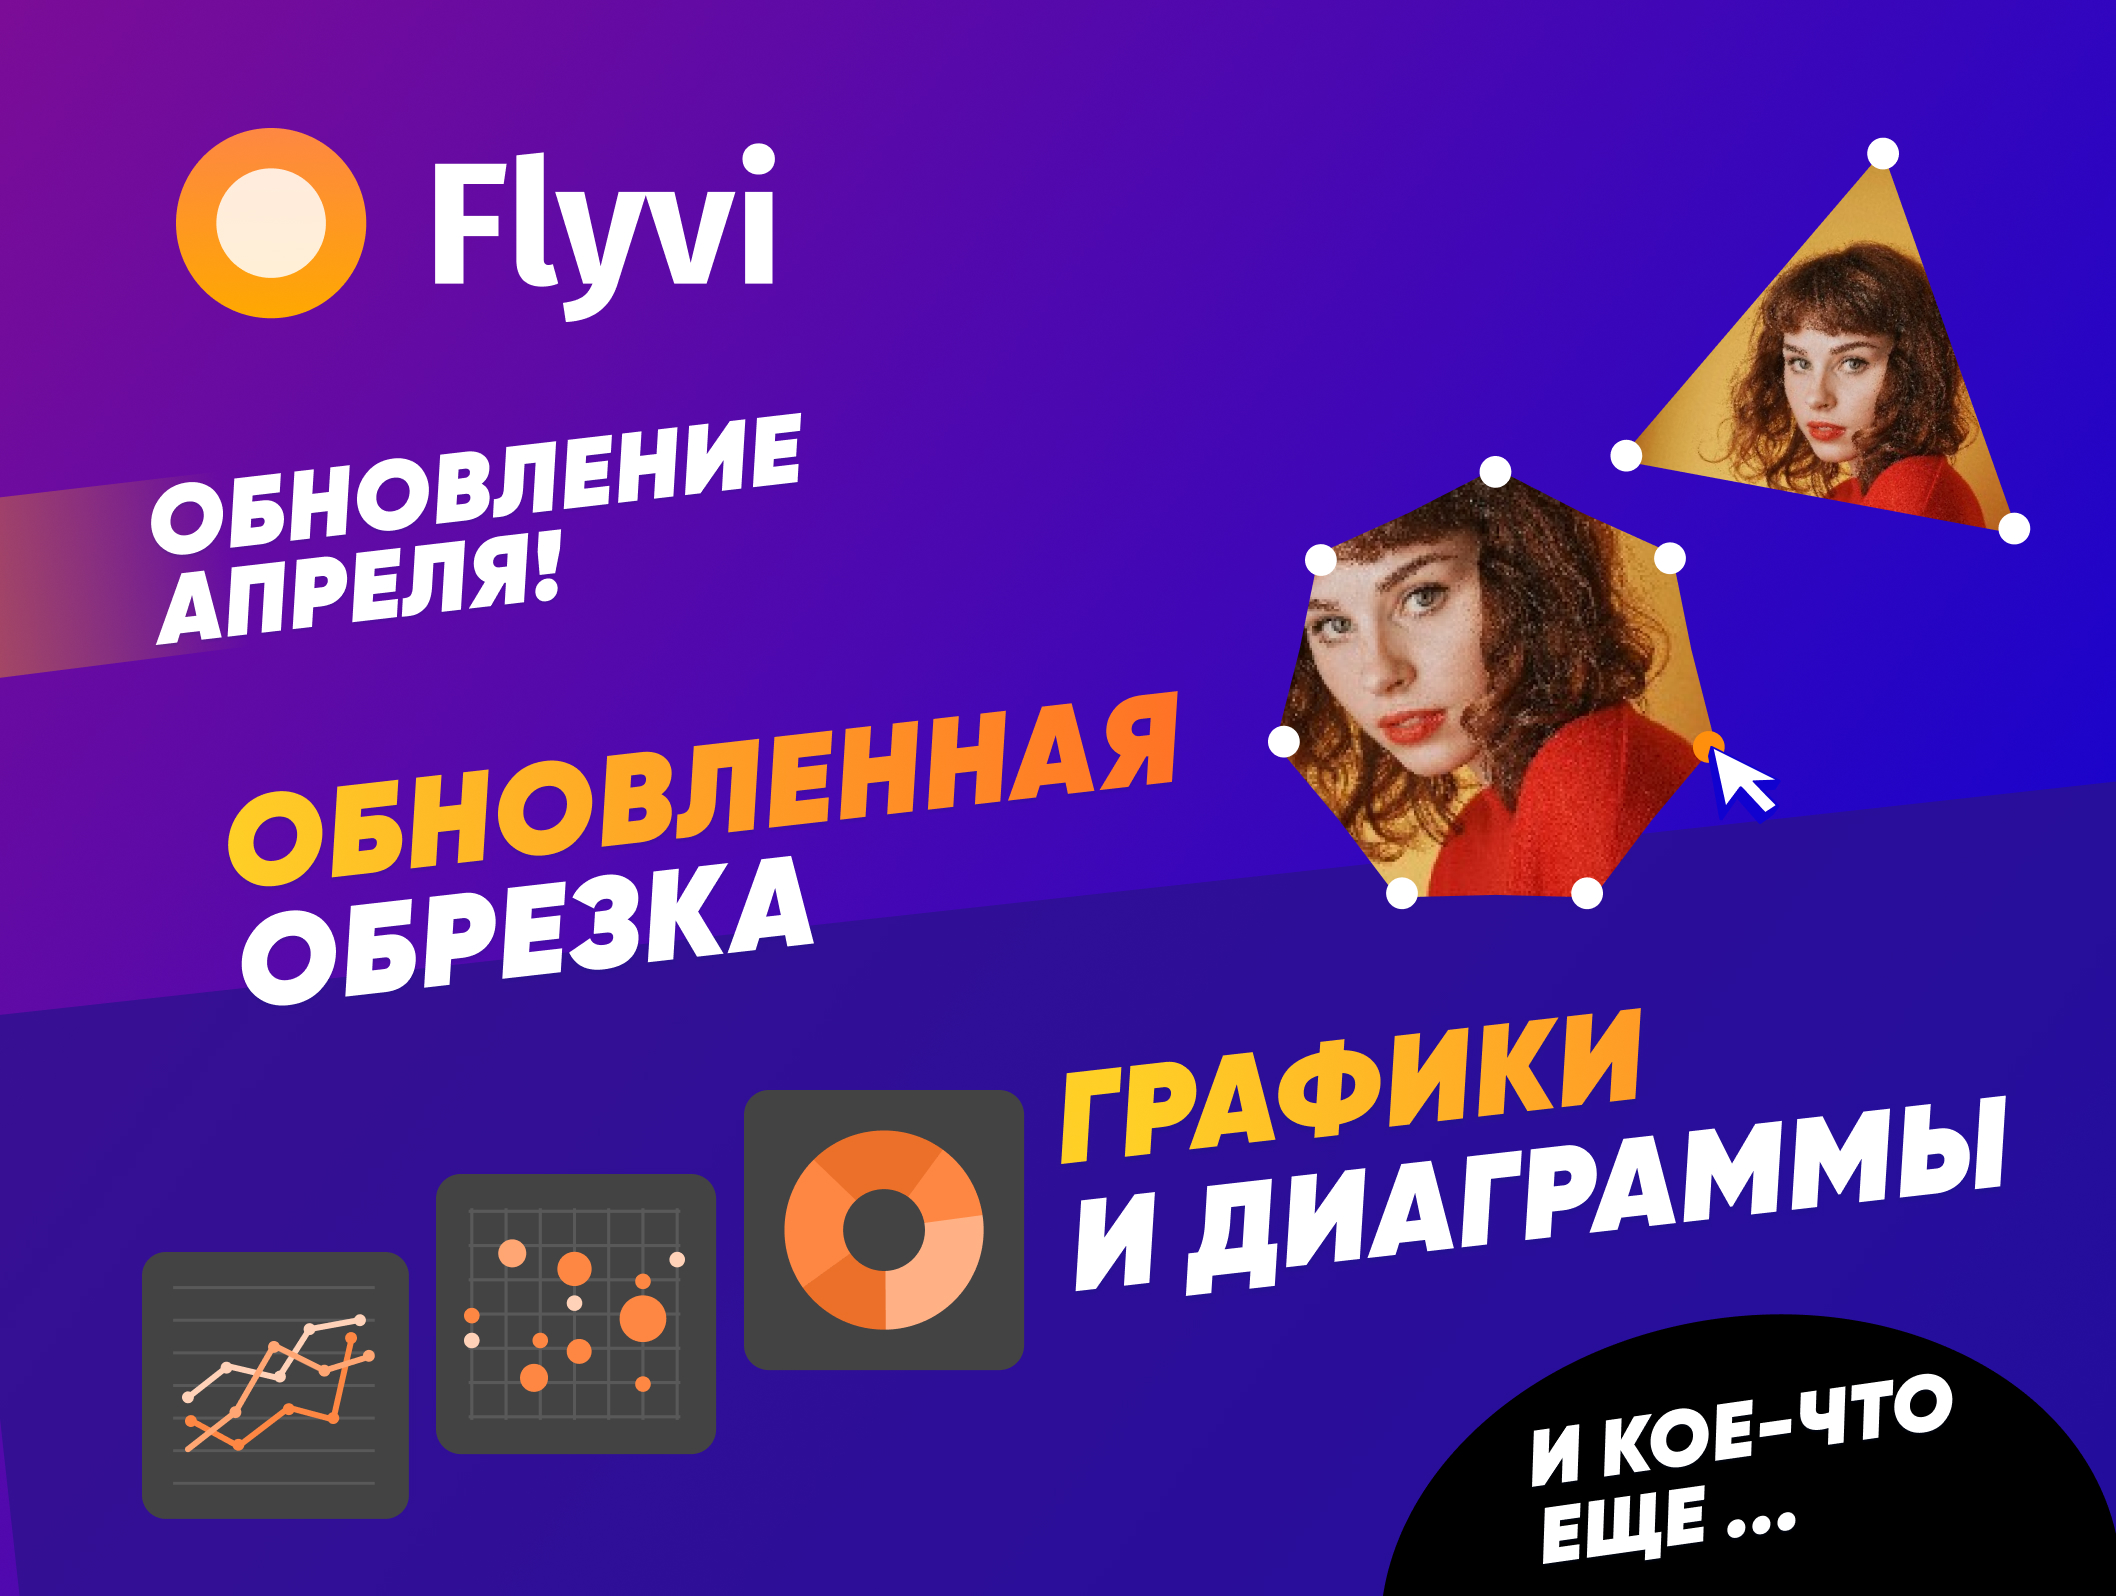 ⚙️ Апрельское обновление Flyvi: графики и диаграммы, фигурный кроп фото и кое-что еще